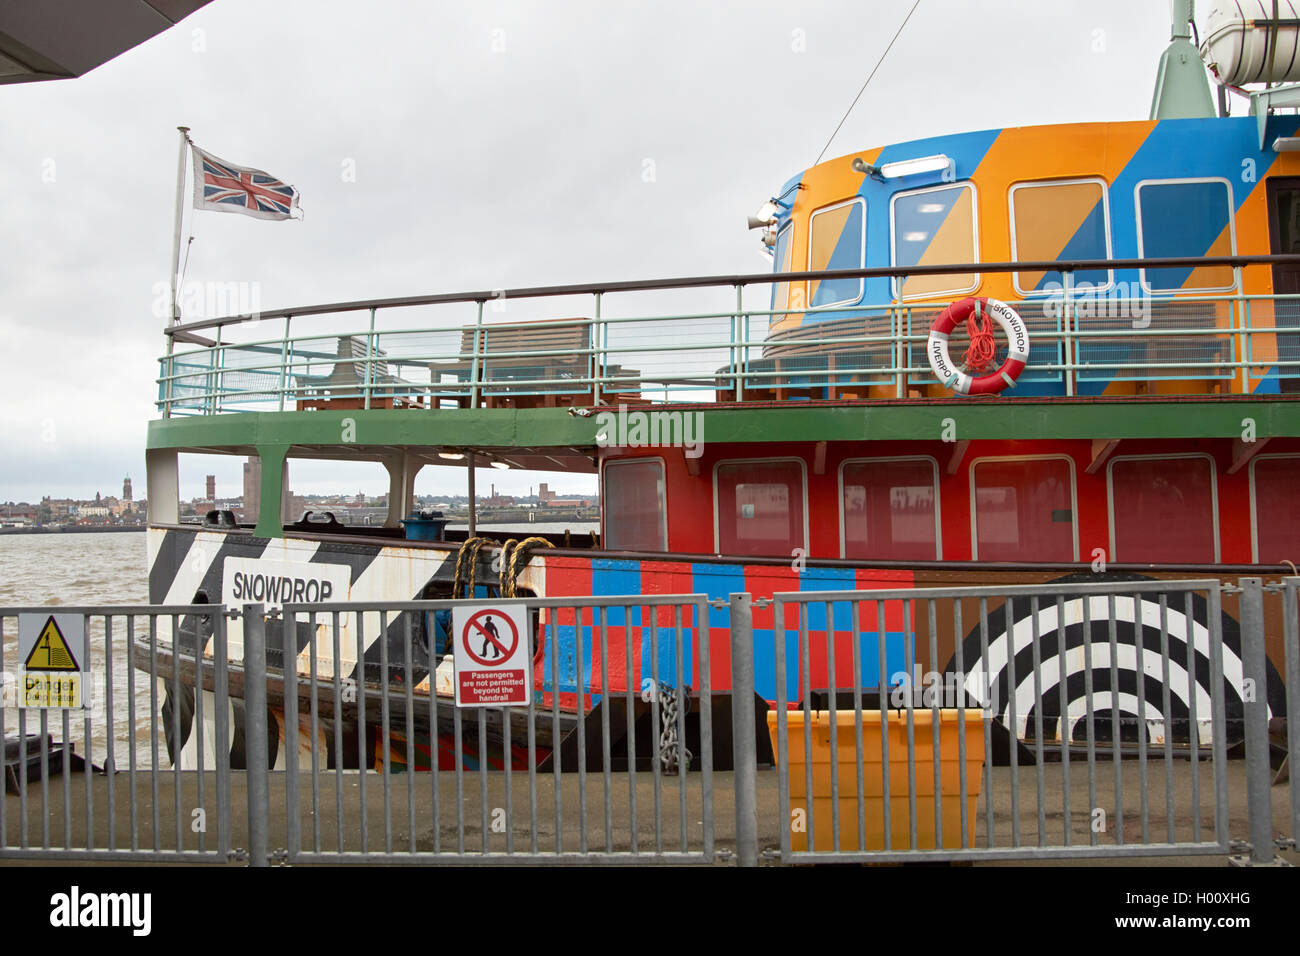 Mersey Fähre Schneeglöckchen ferry in Razzle dazzle Weltkrieg eine störende Farbe Muster Liverpool Merseyside UK Stockfoto